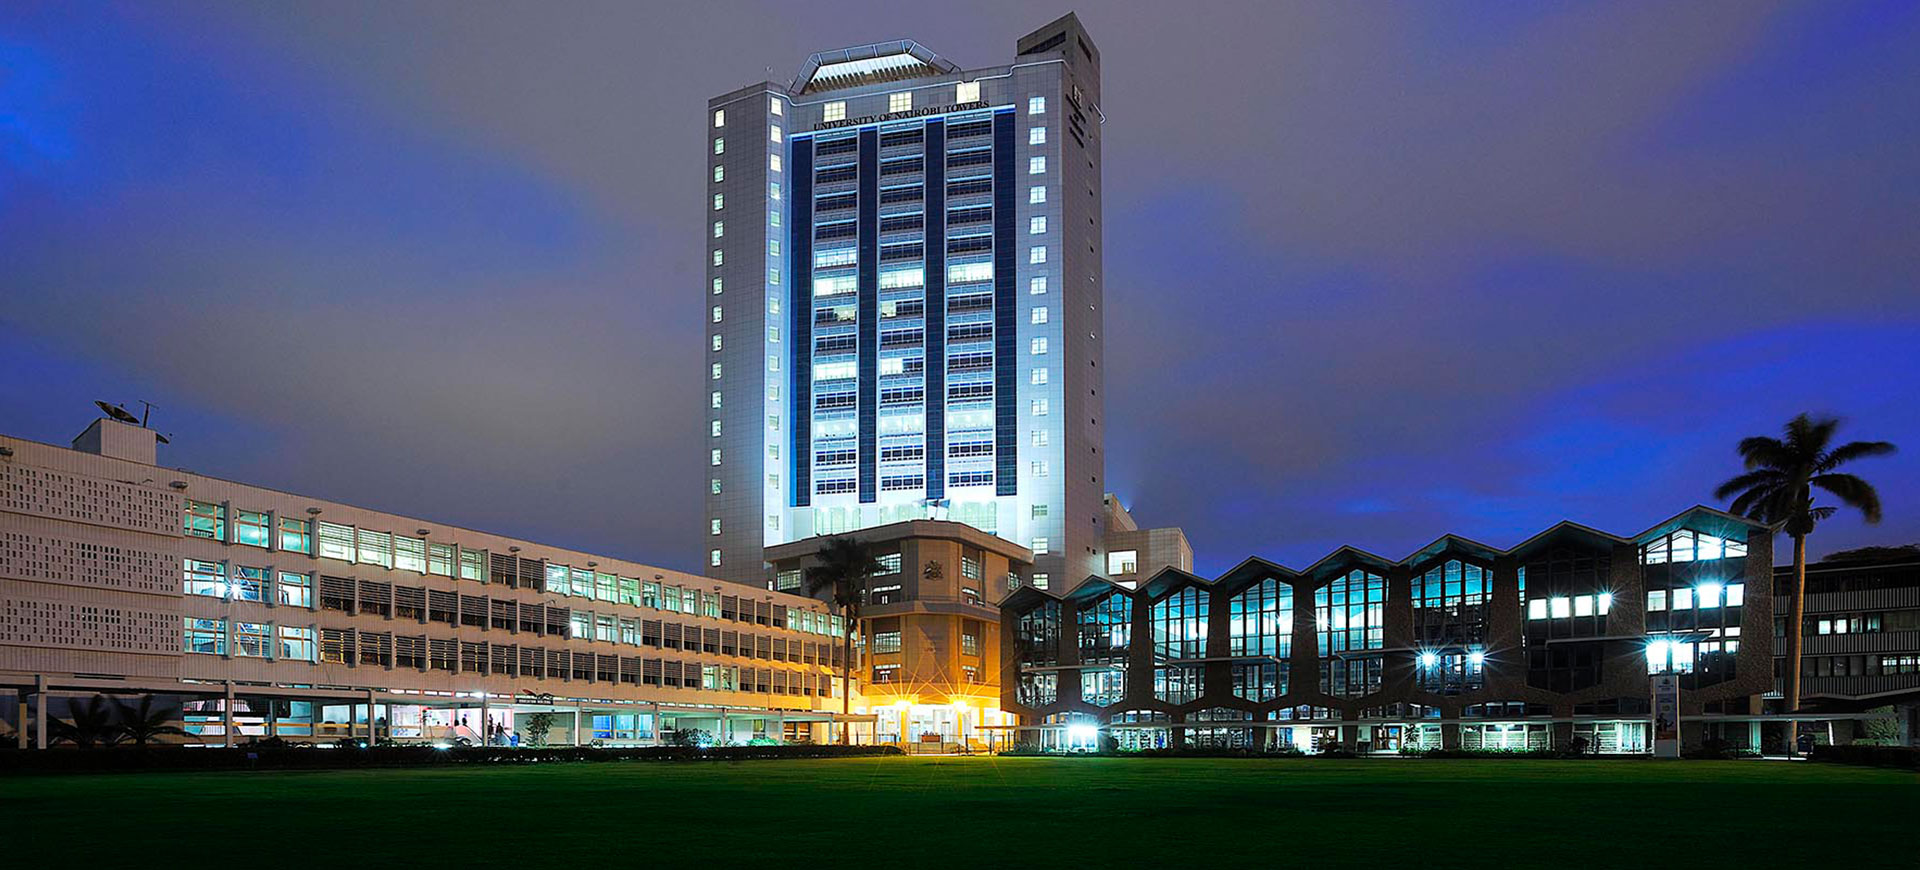 University Of Nairobi Main Campus 